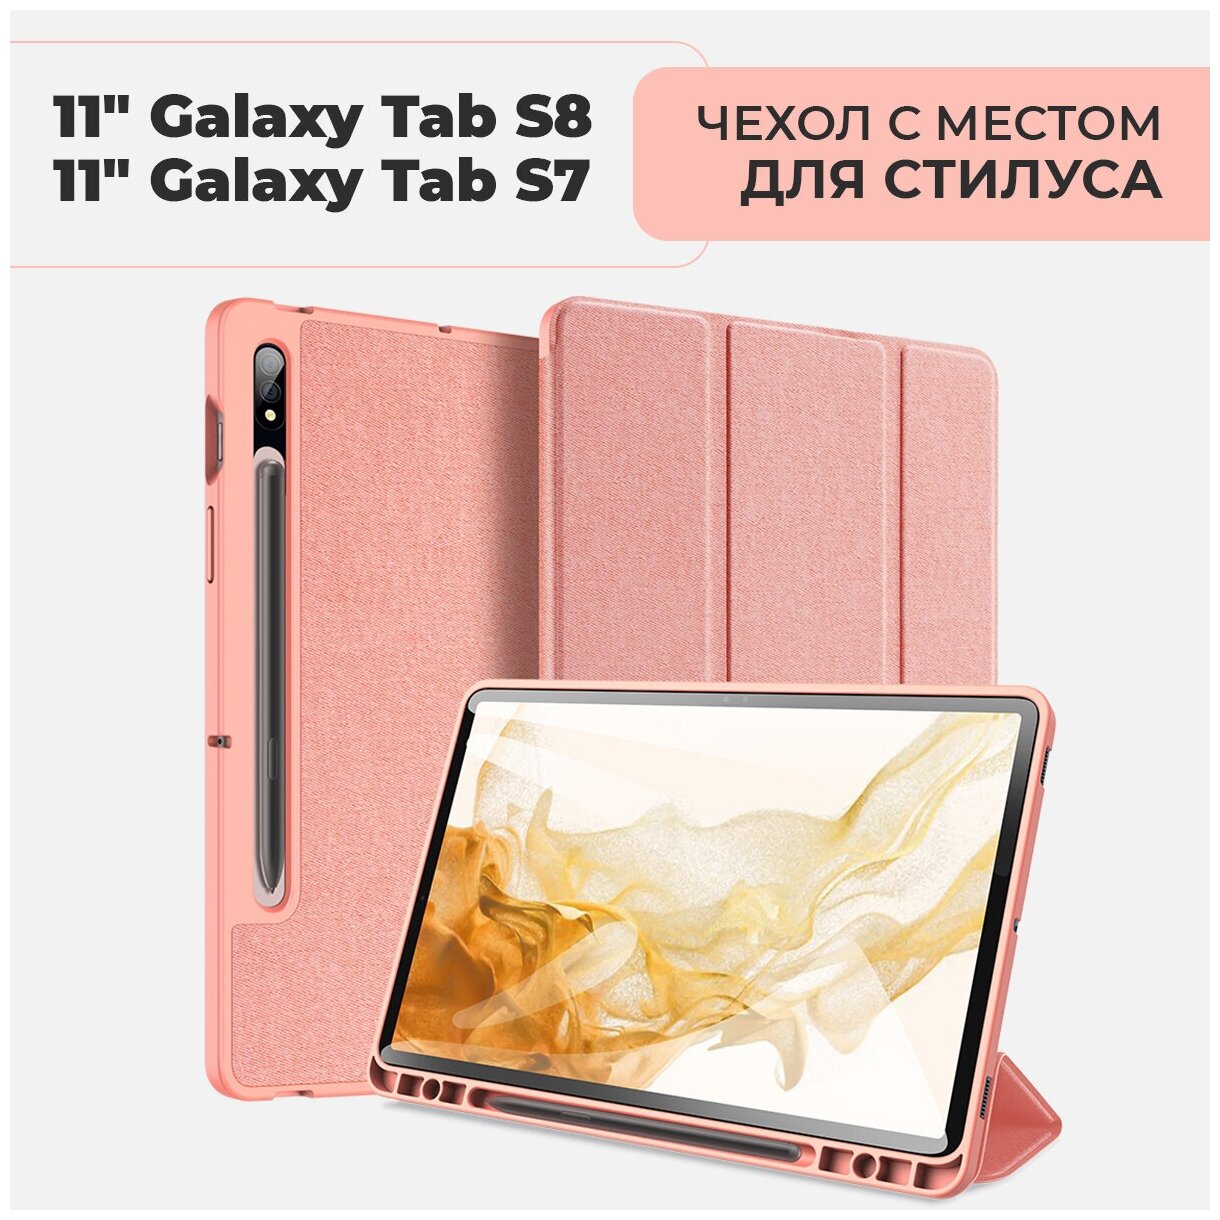 Чехол премиальный для планшета Samsung Galaxy Tab S7 / S8 экран 11.0" , с местом для стилуса, розовый